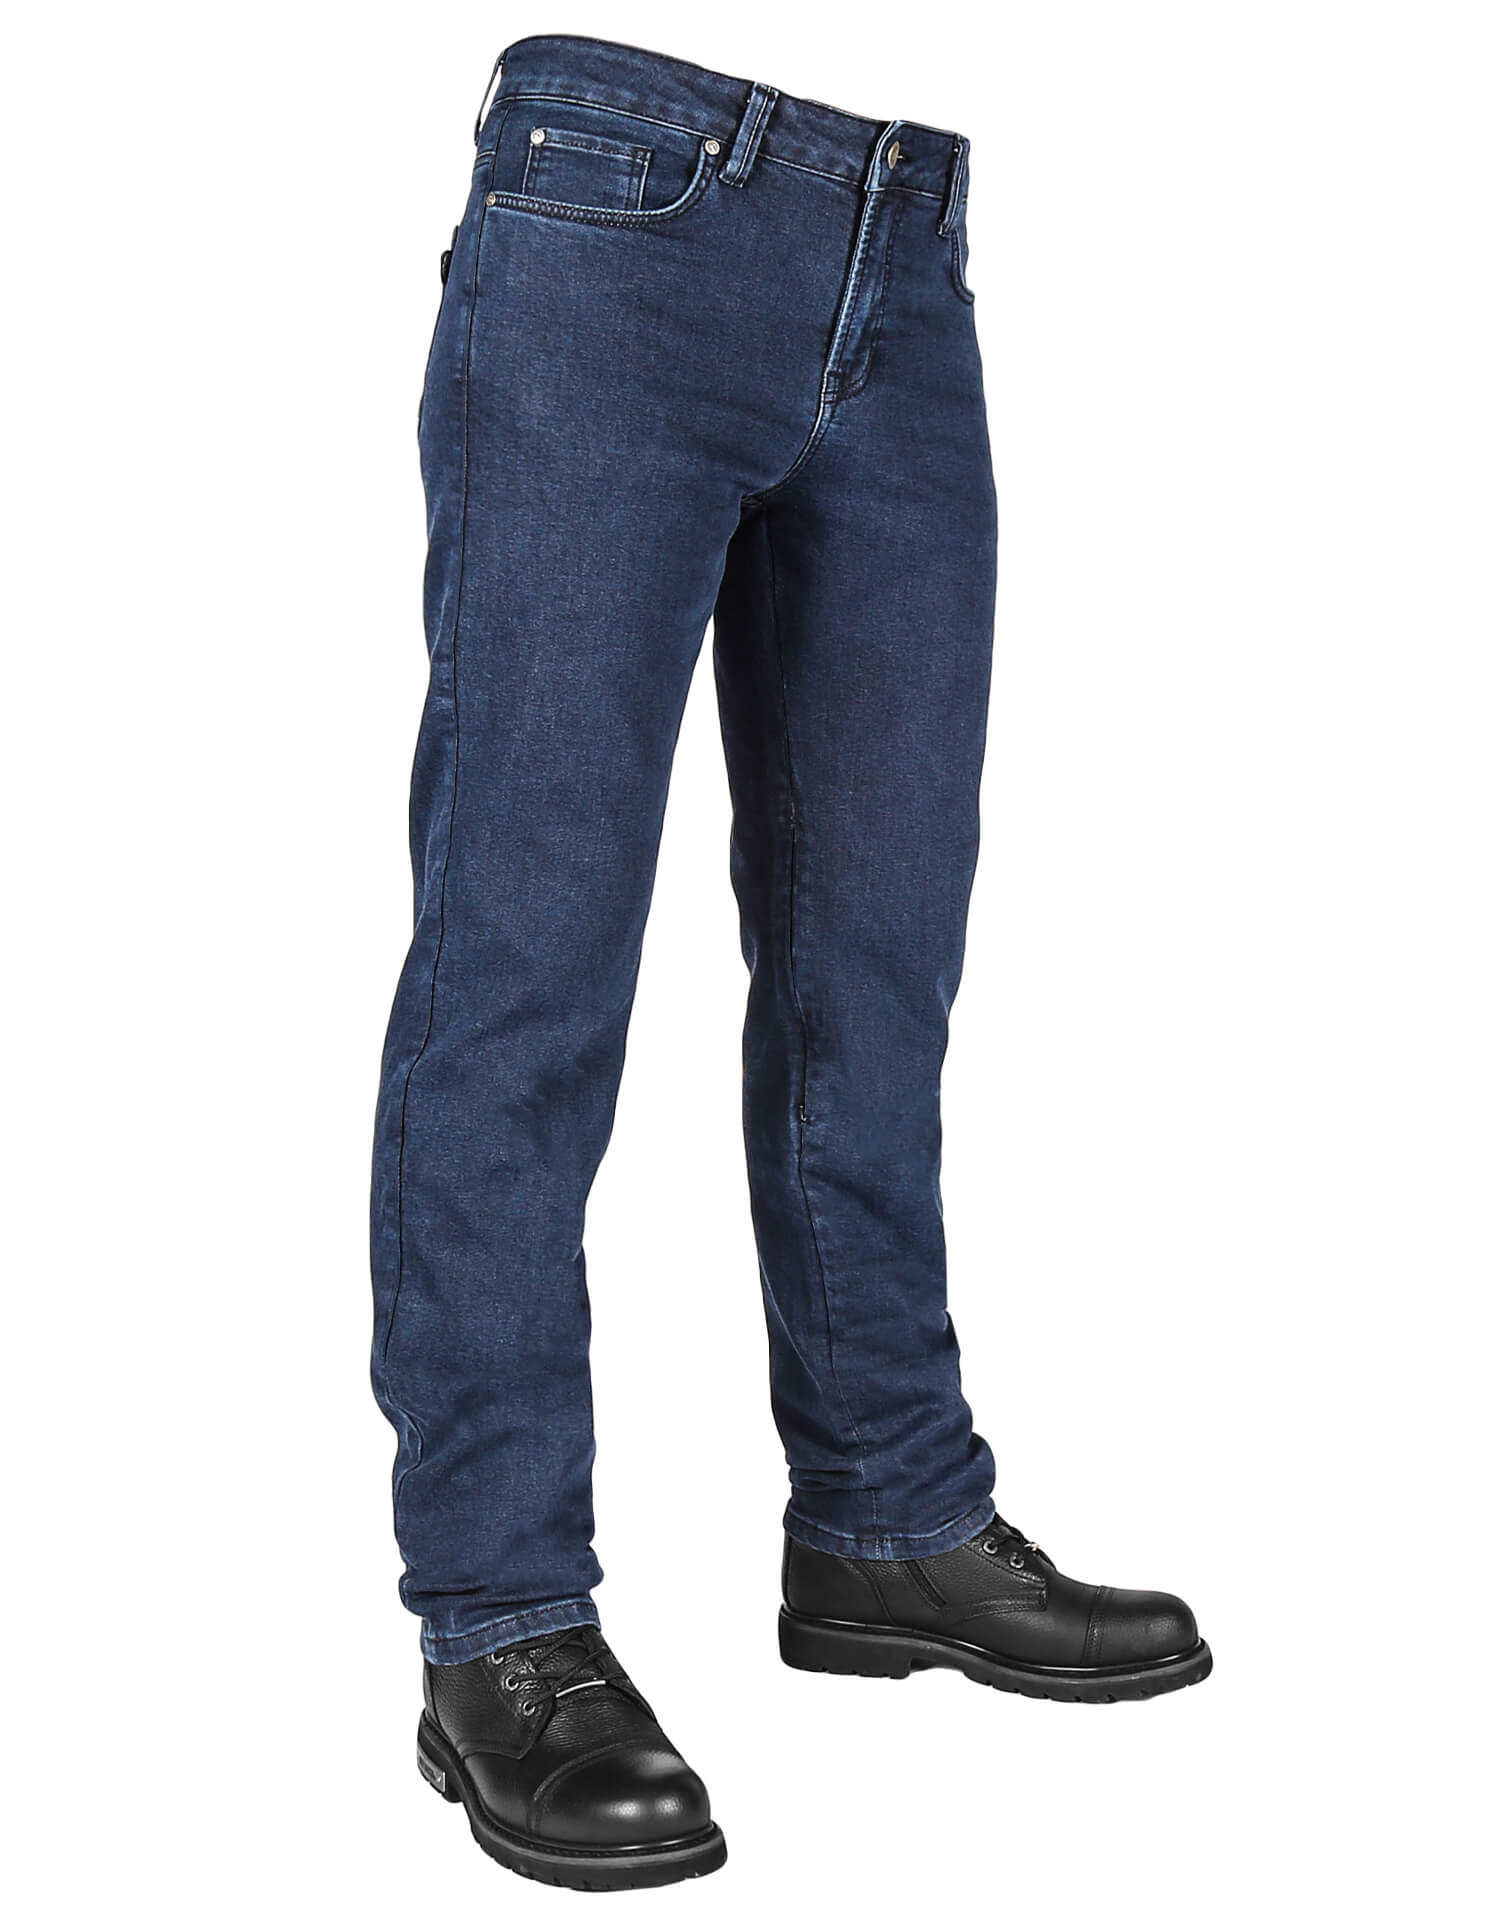 The Biker Jeans - Urbanizer Dark Blue Cordura® Korumalı Motosiklet Kot Pantolonu Erkek